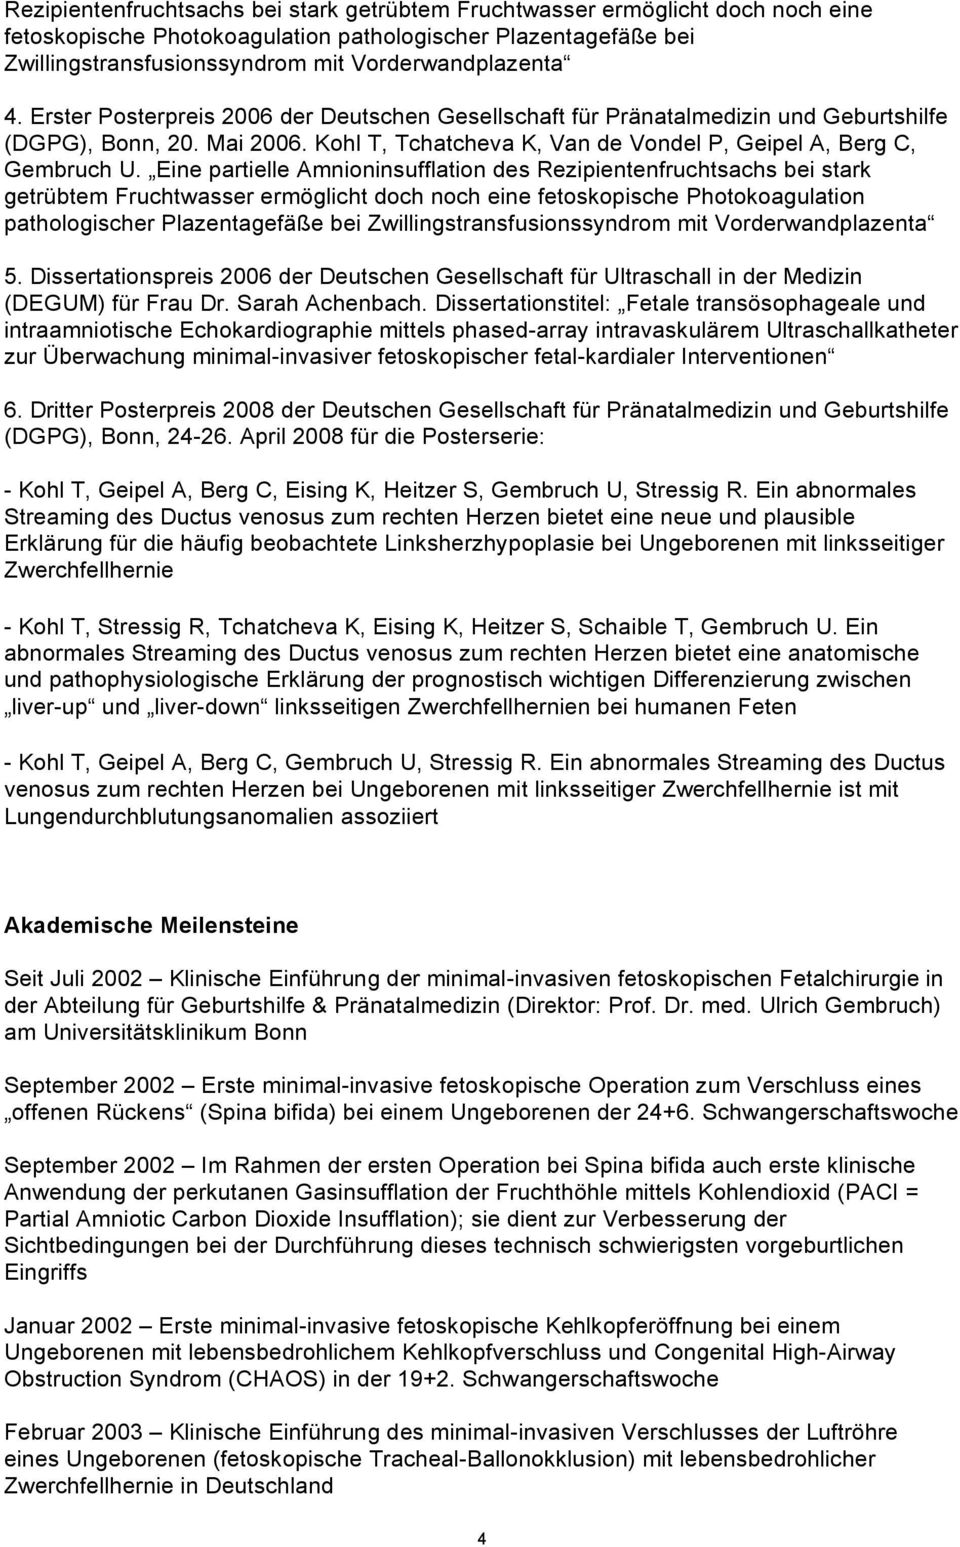 Eine partielle Amnioninsufflation des  5. Dissertationspreis 2006 der Deutschen Gesellschaft für Ultraschall in der Medizin (DEGUM) für Frau Dr. Sarah Achenbach.